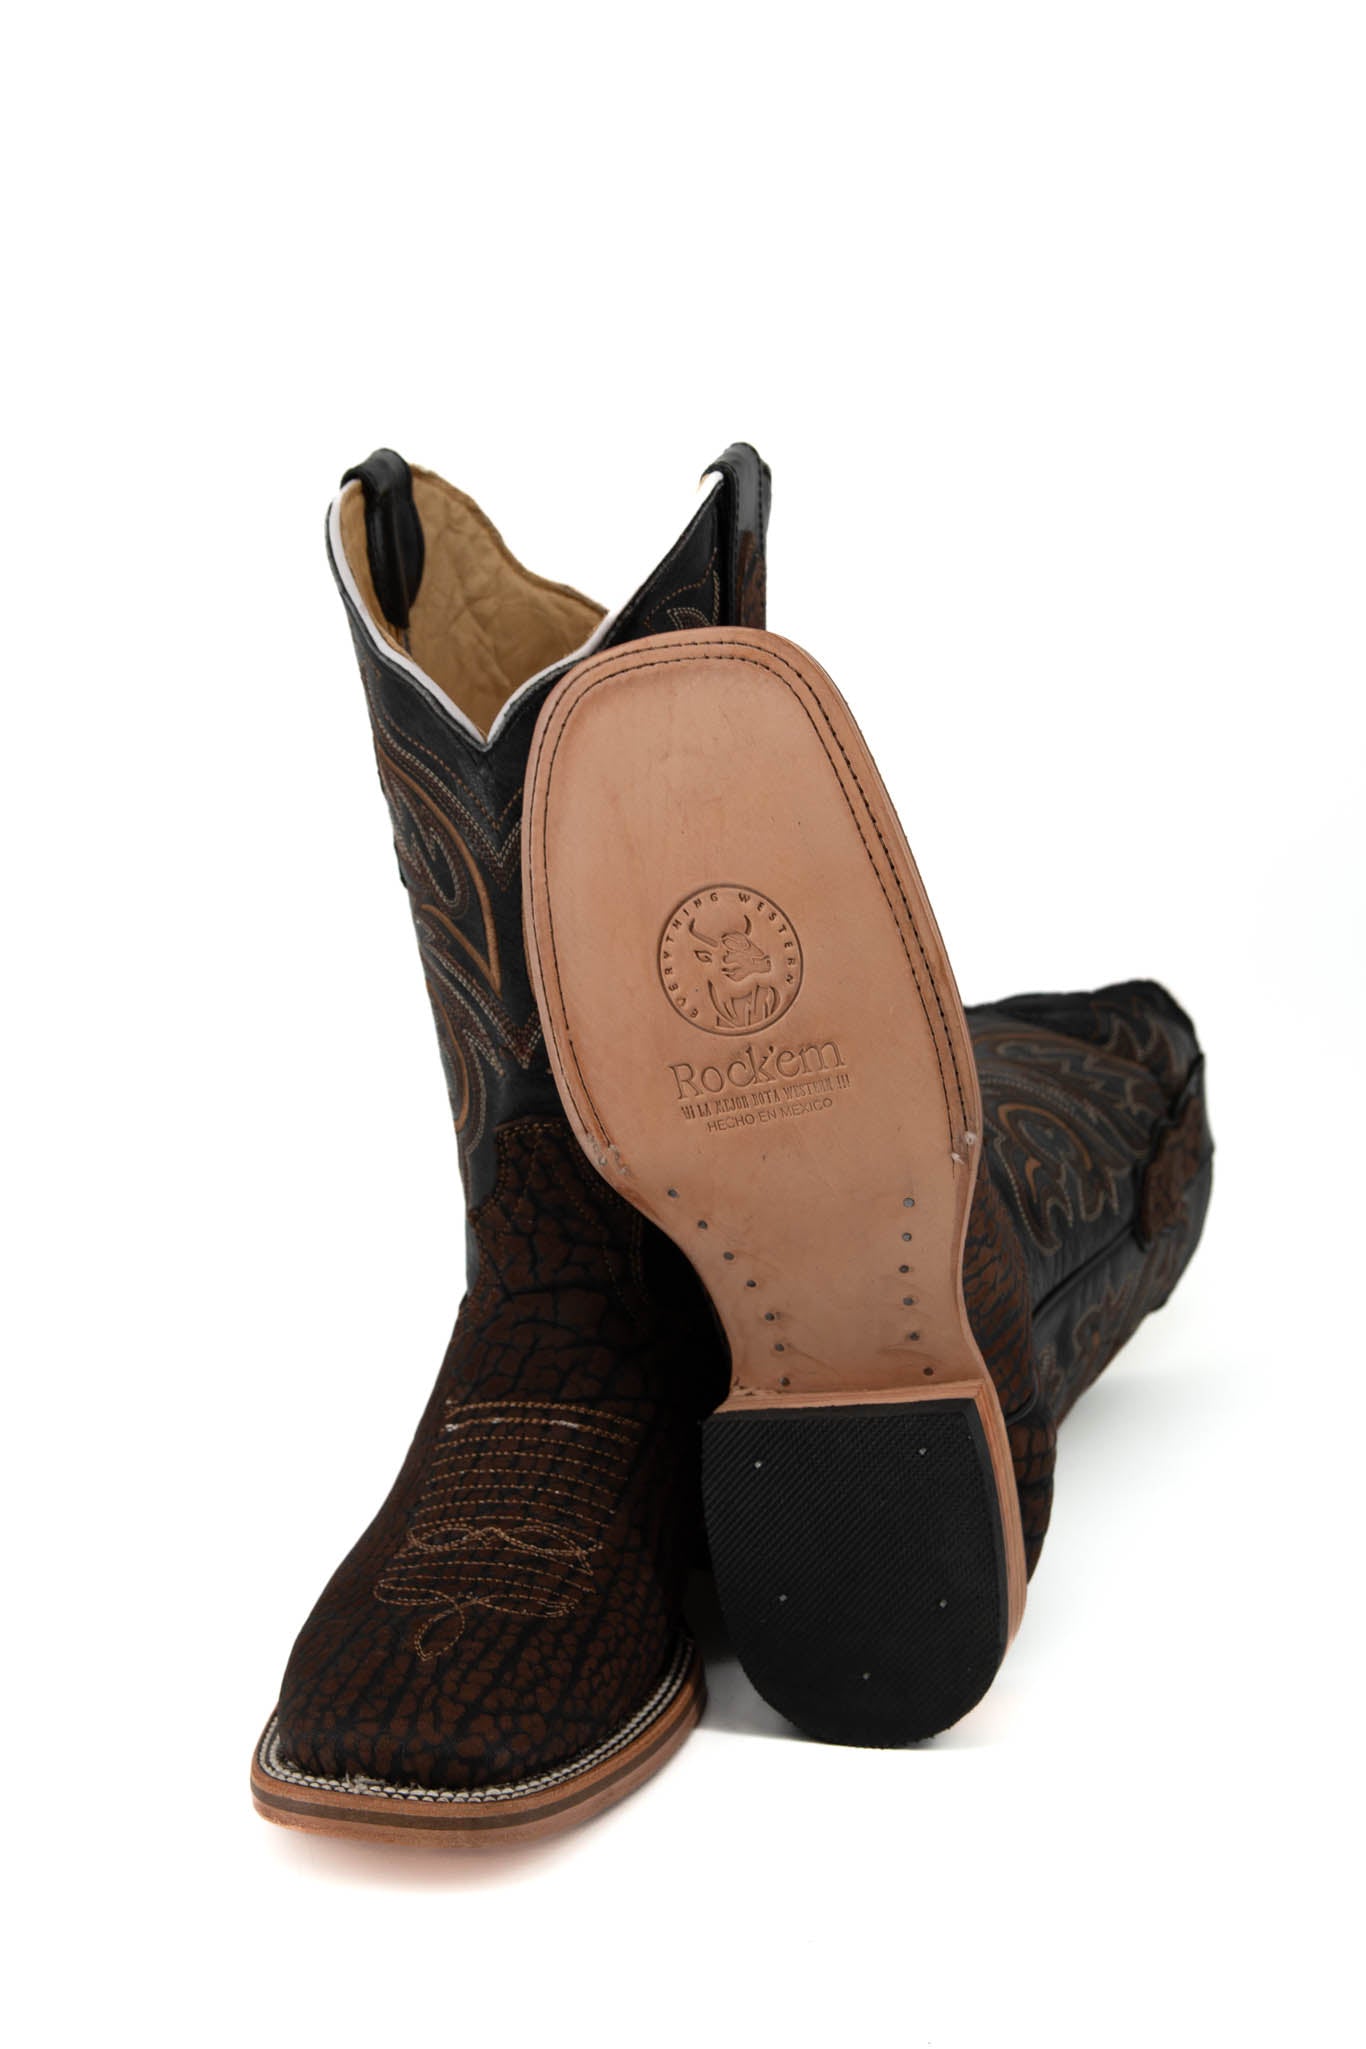 Est. 400 Cuello de Toro Cowboy Boot